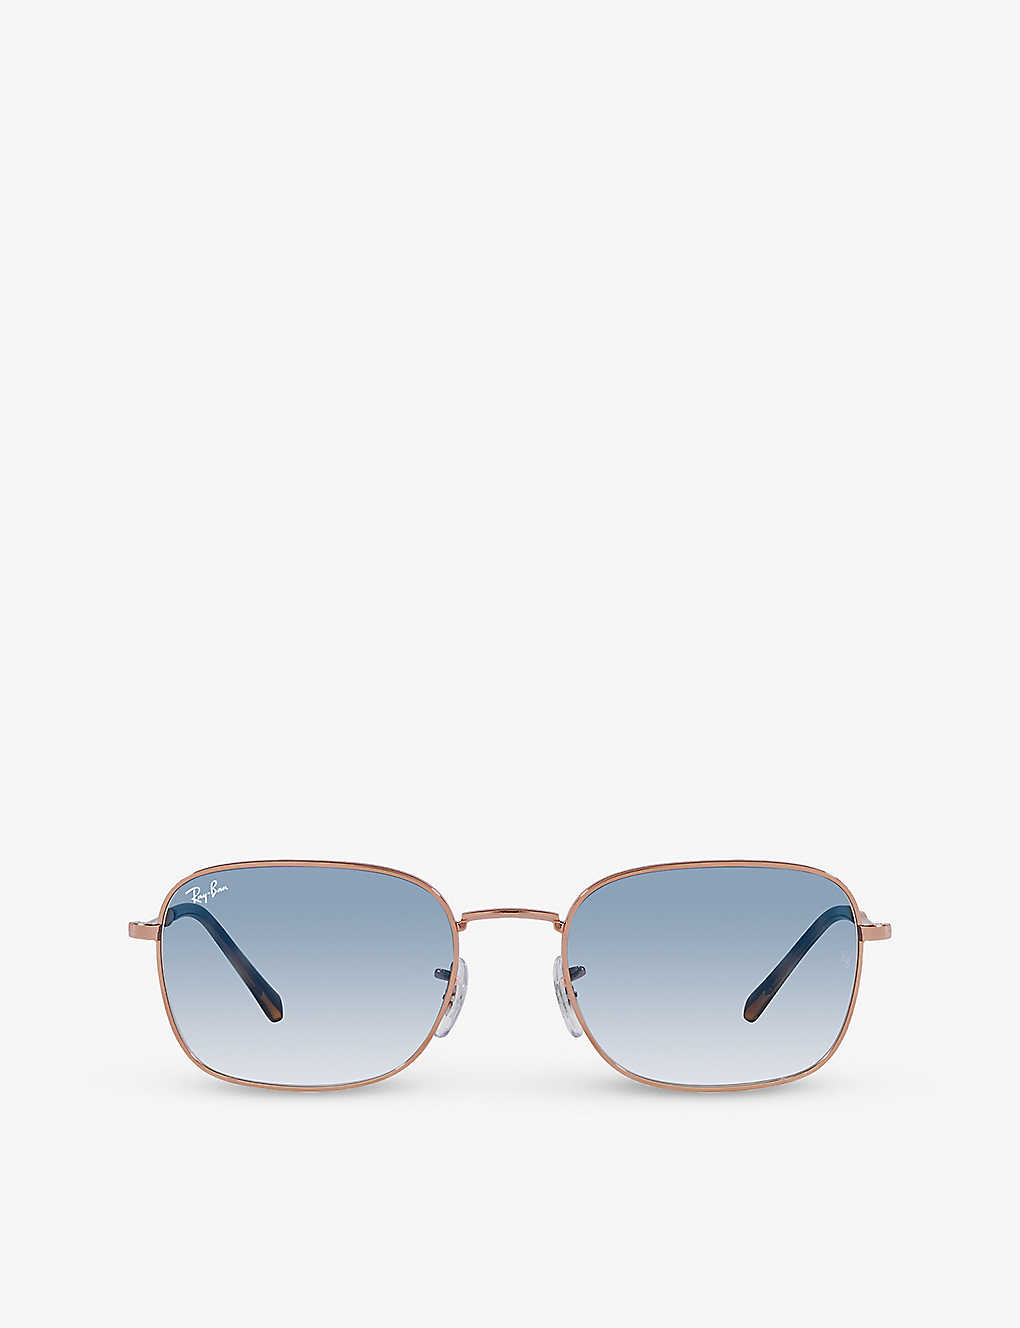 Ray Ban Sunglasses Unisex Rb3706 - Rose Gold Frame Blue Lenses 54-20